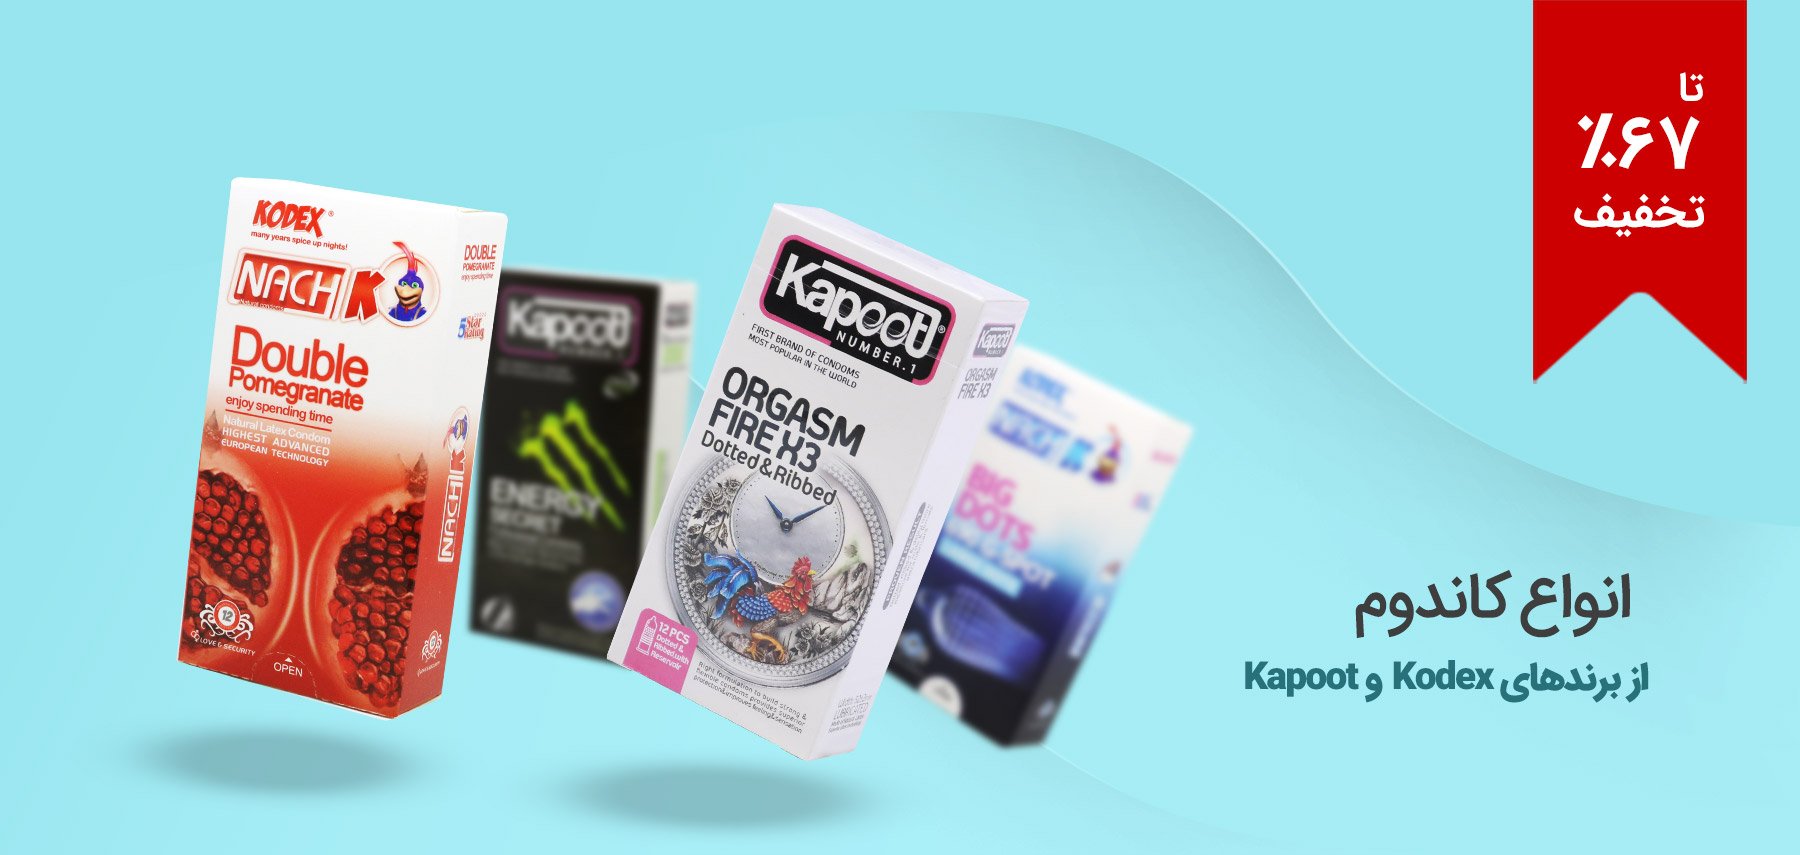 فروش ویژه انواع کاندوم از برندهای Kodex و Kapoot در مدل‌ها و رایحه‌های متنوع، دارای مجوز رسمی وزارت بهداشت